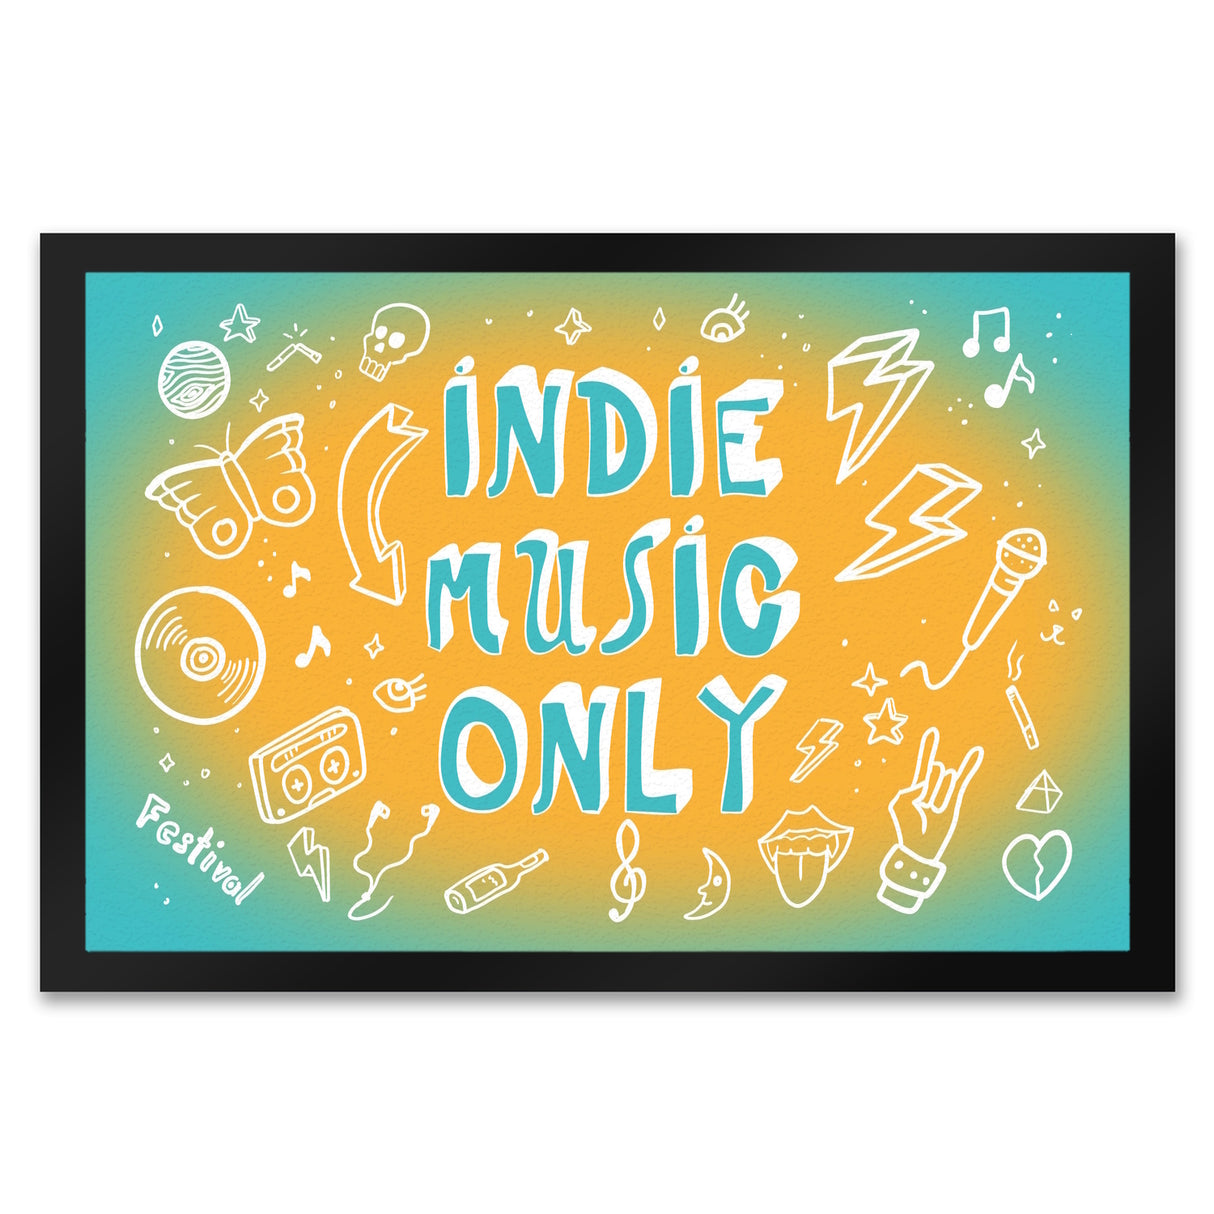 Indie Music Only Fußmatte für Indiefans und Festivalgänger